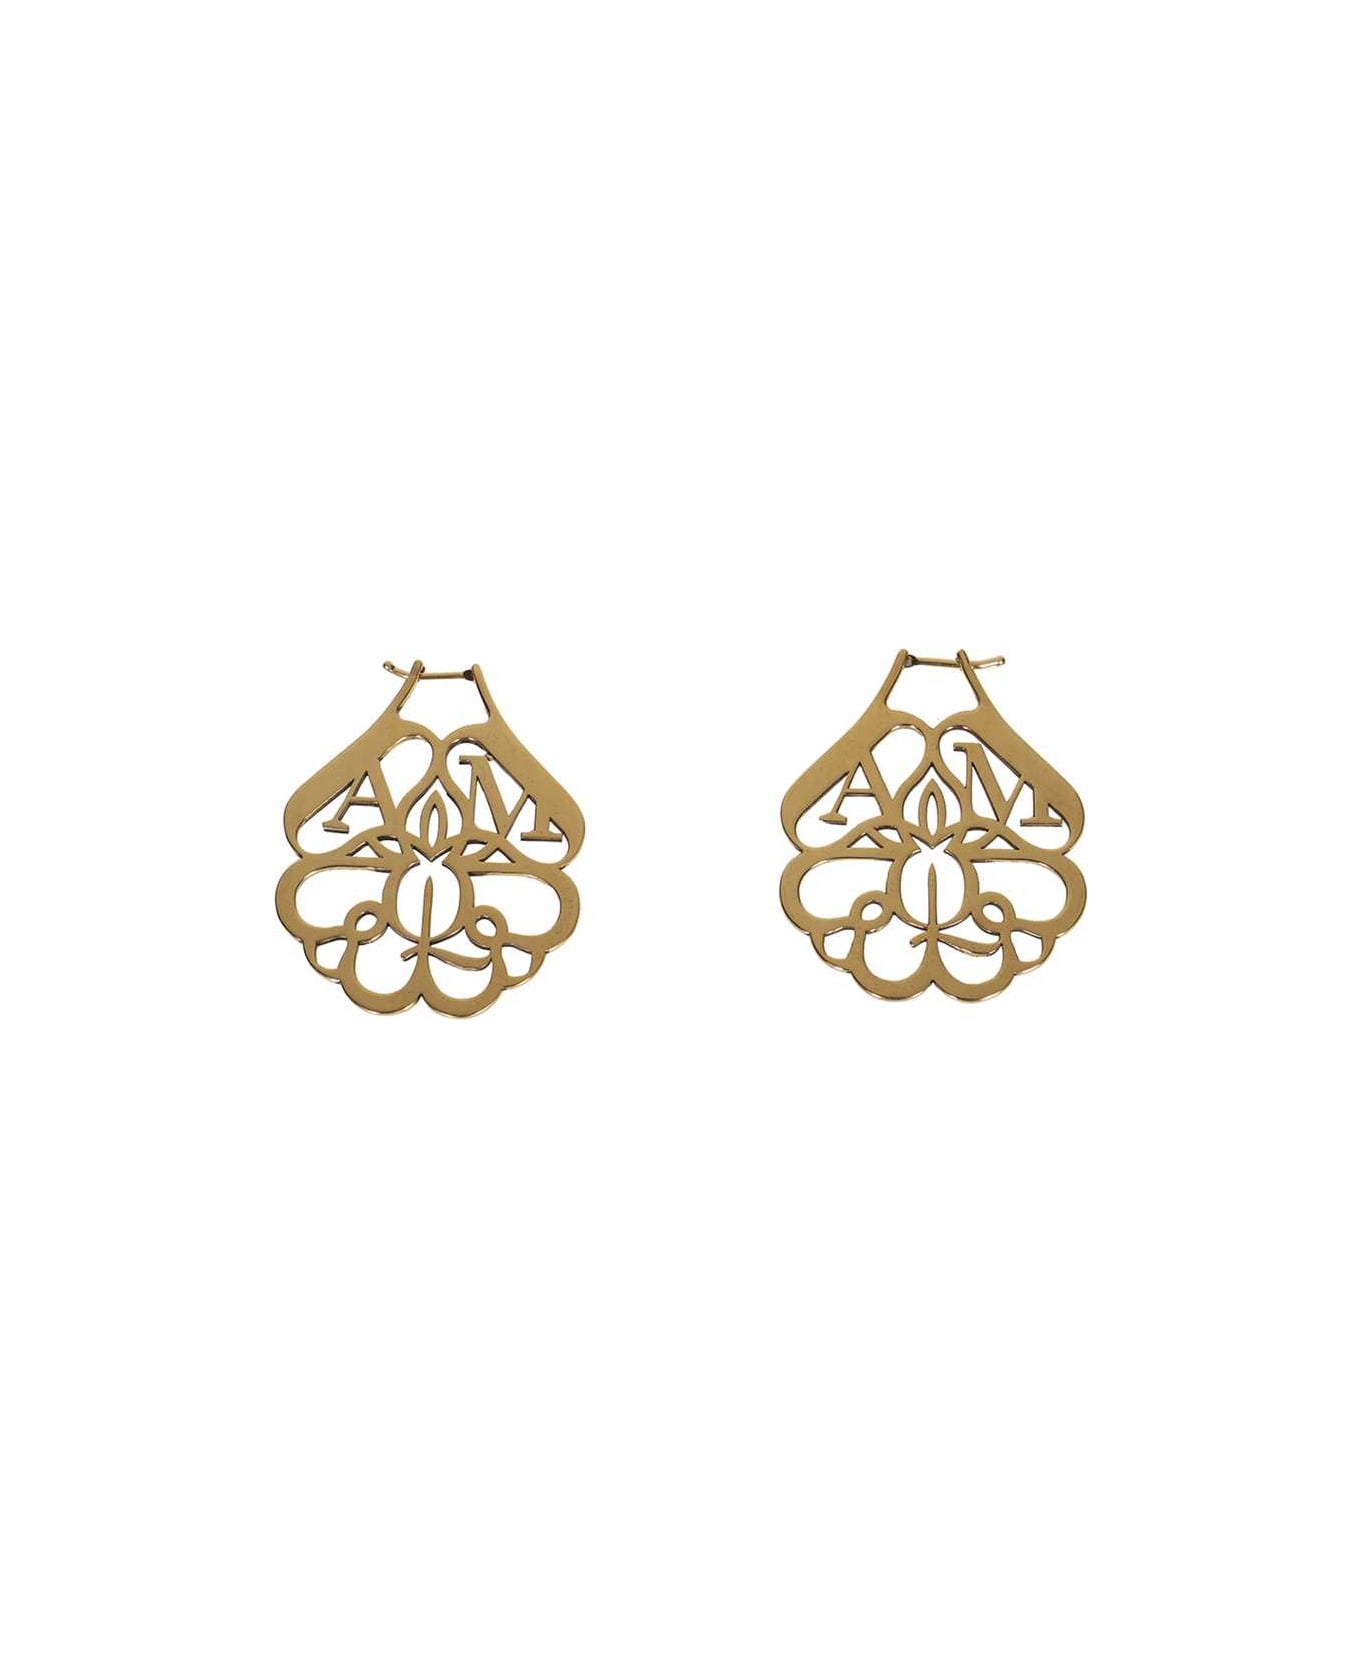 Alexander McQueen Logoed Earrings - Gold イヤリング